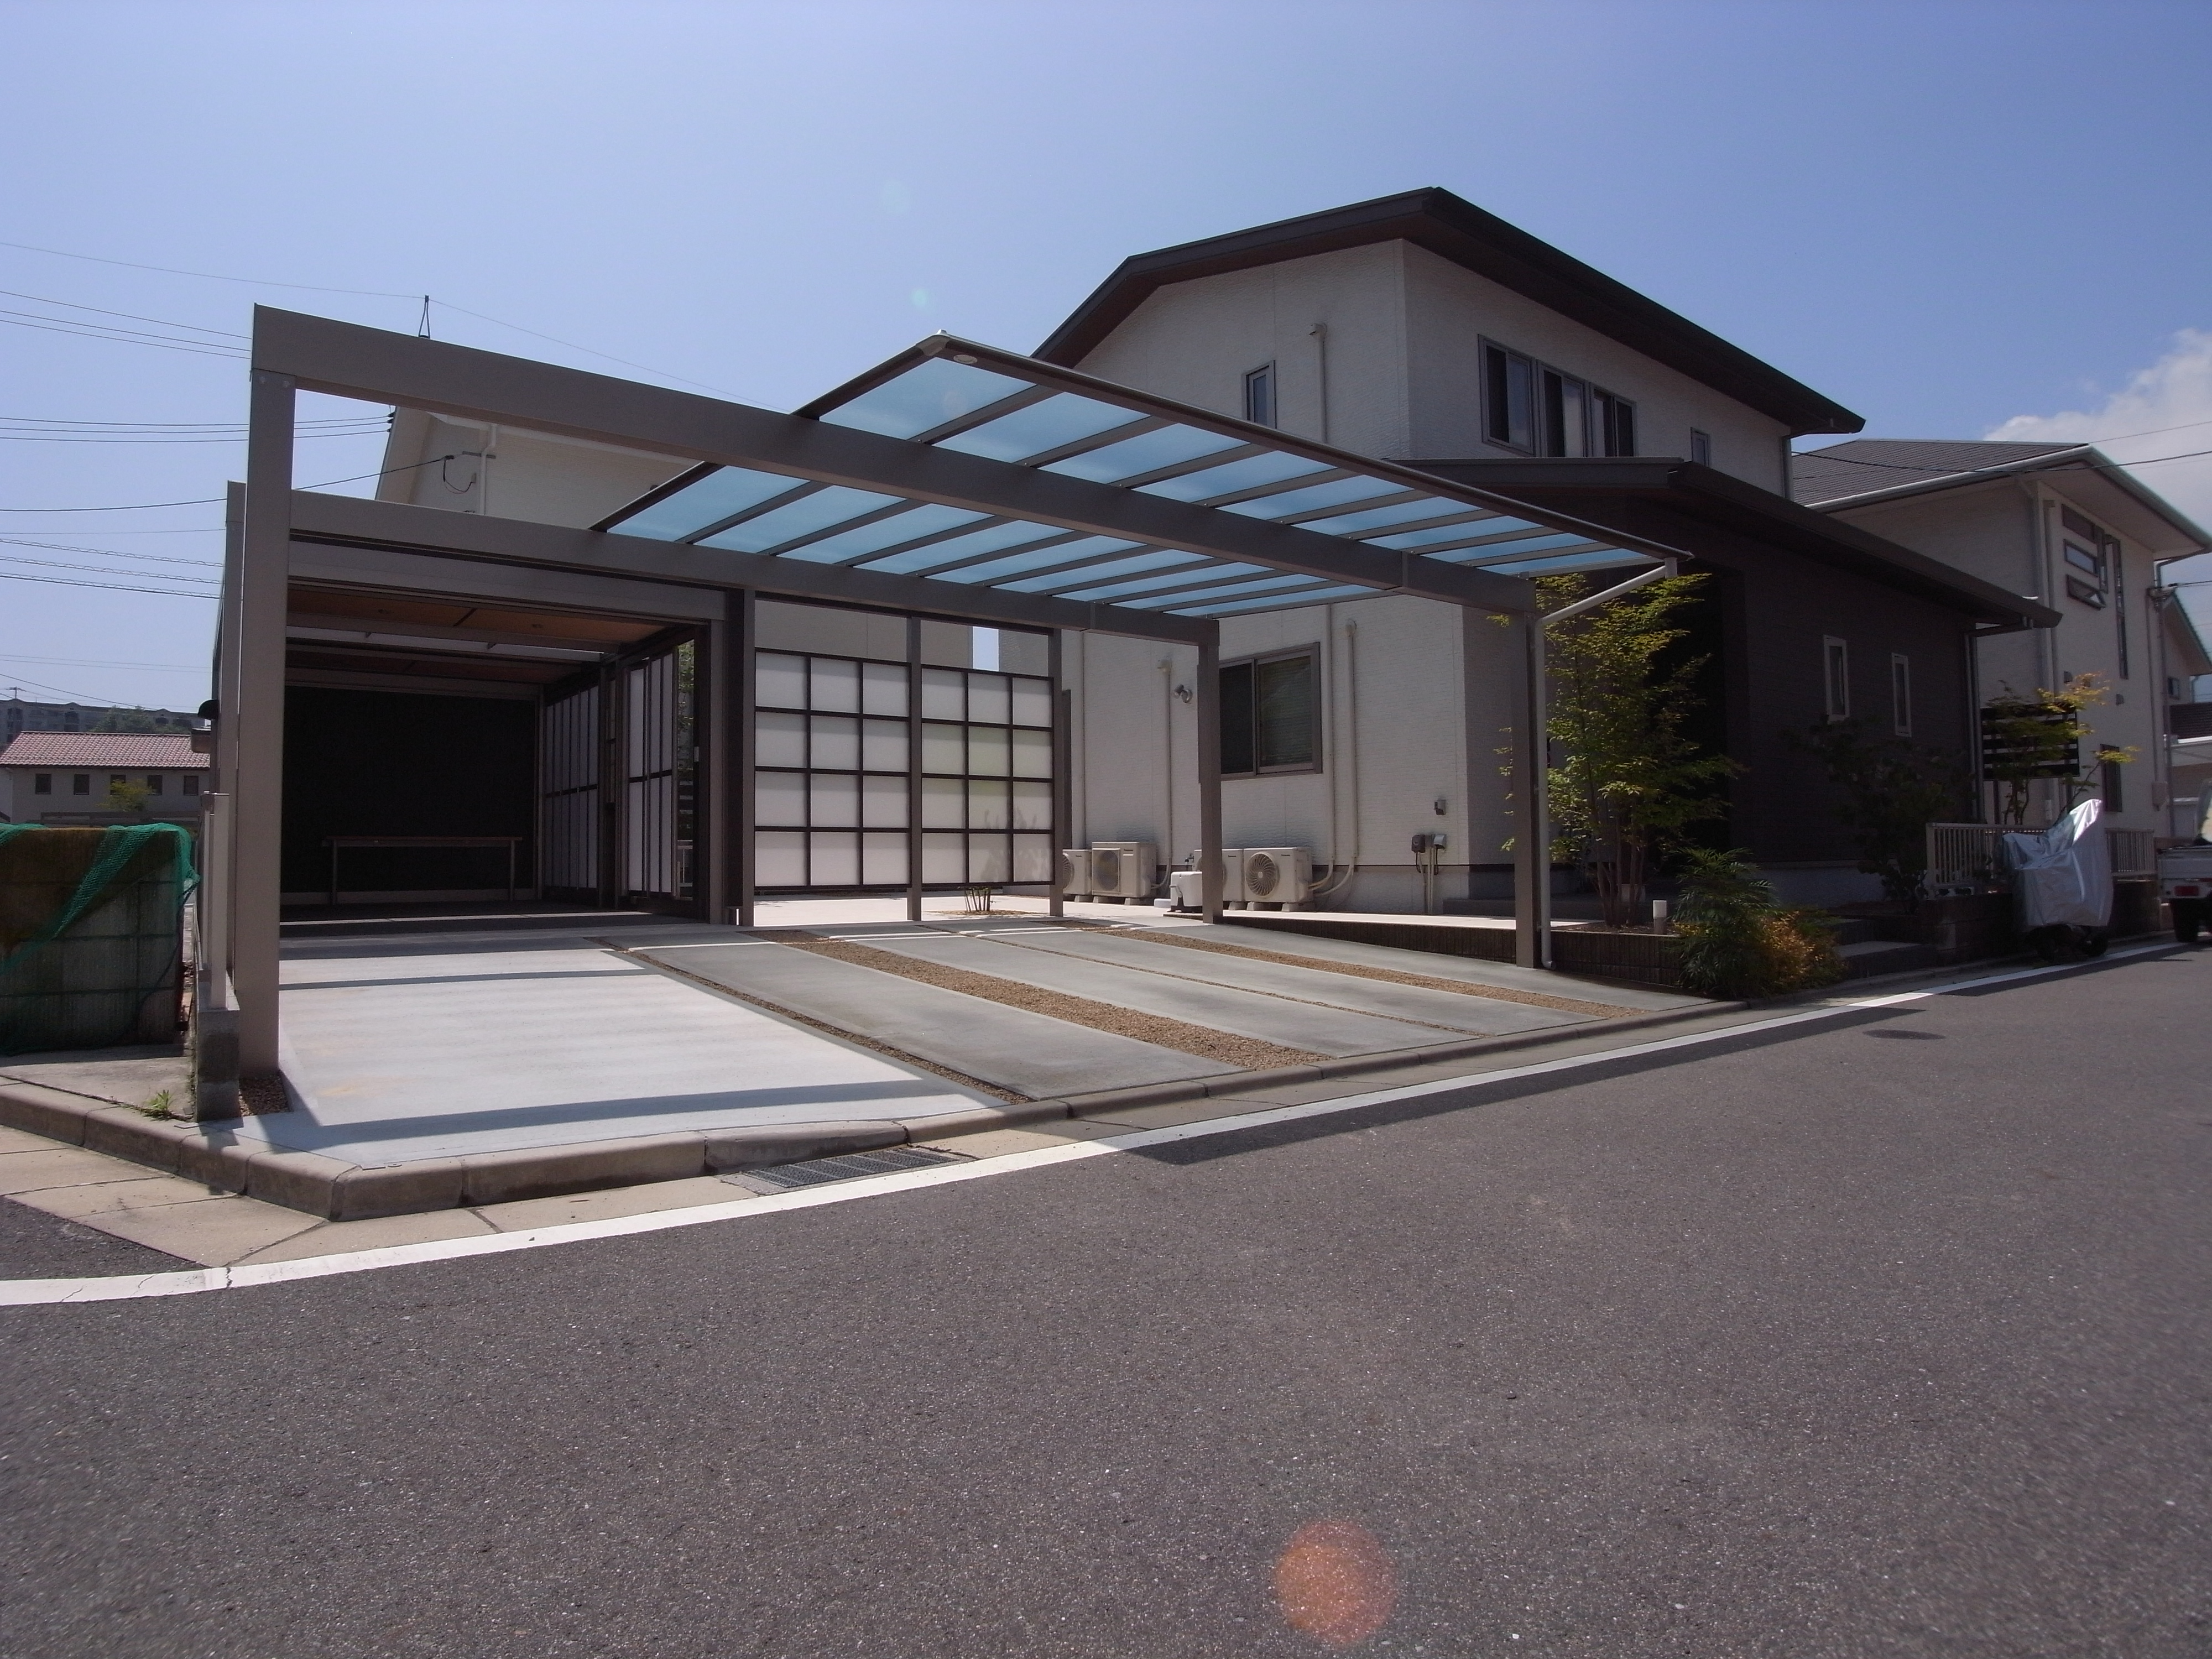 LIXILのガレージ スタイルコート のあるお庭 岩国市 | 広島